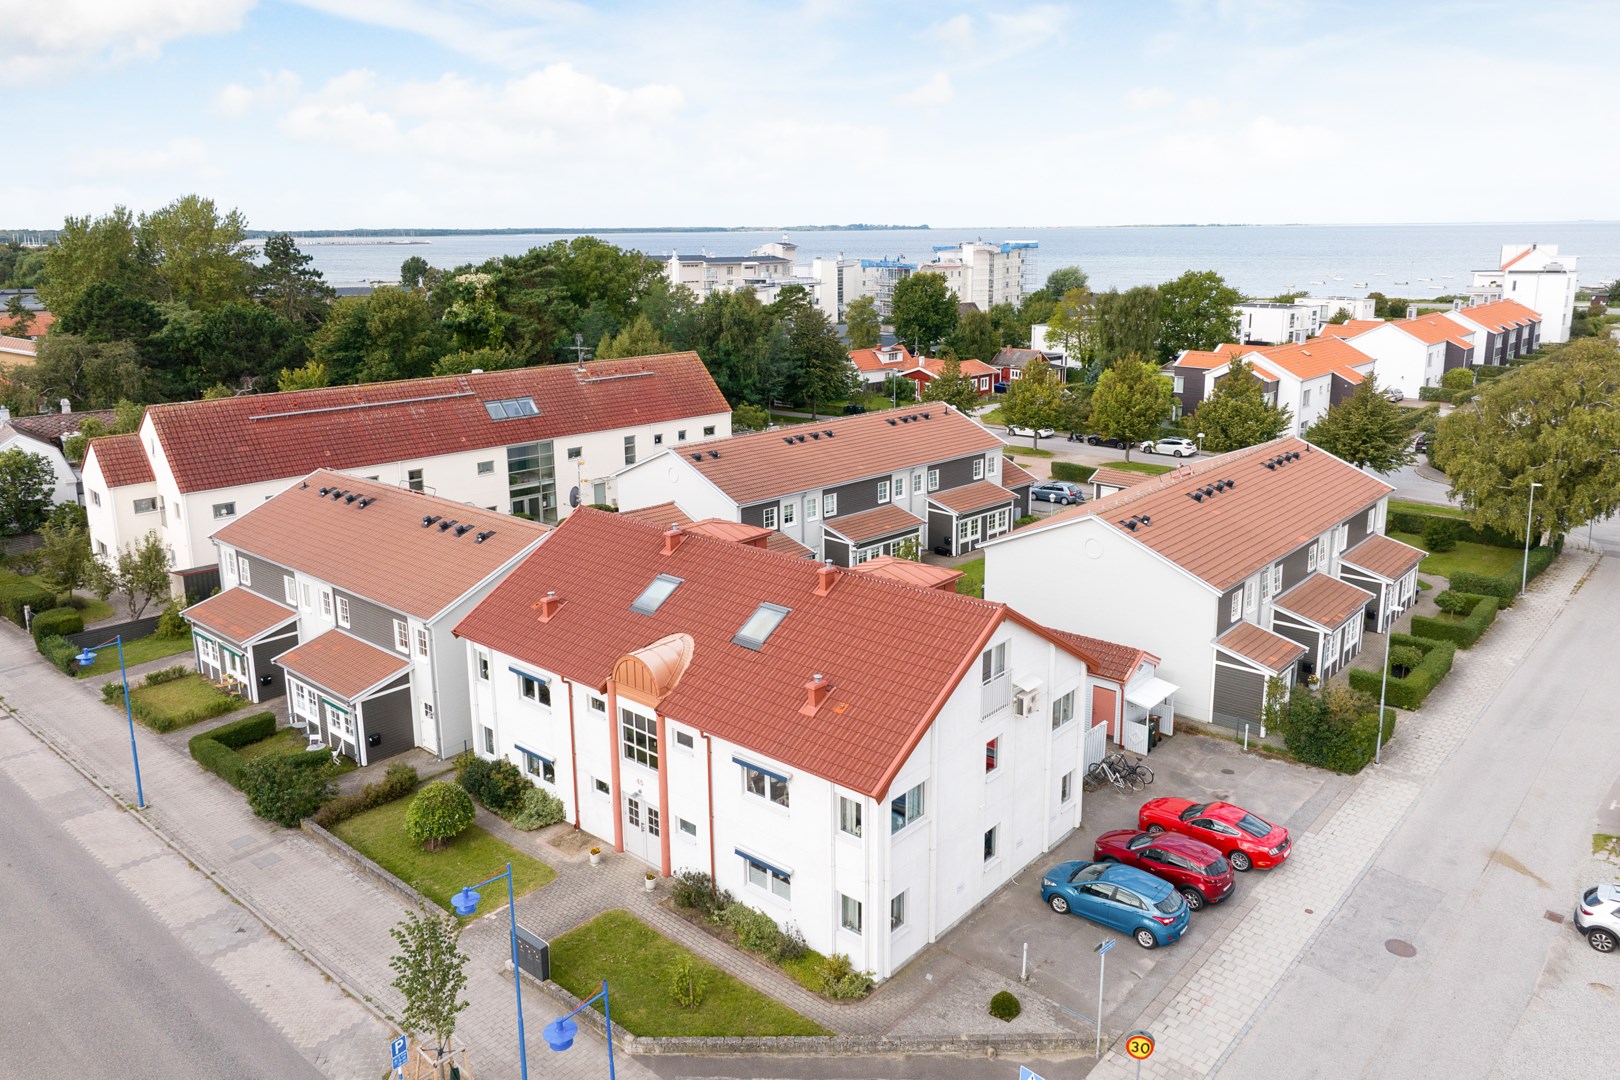 Bostadsrätt i Höllviken, Sverige, Falsterbovägen 45